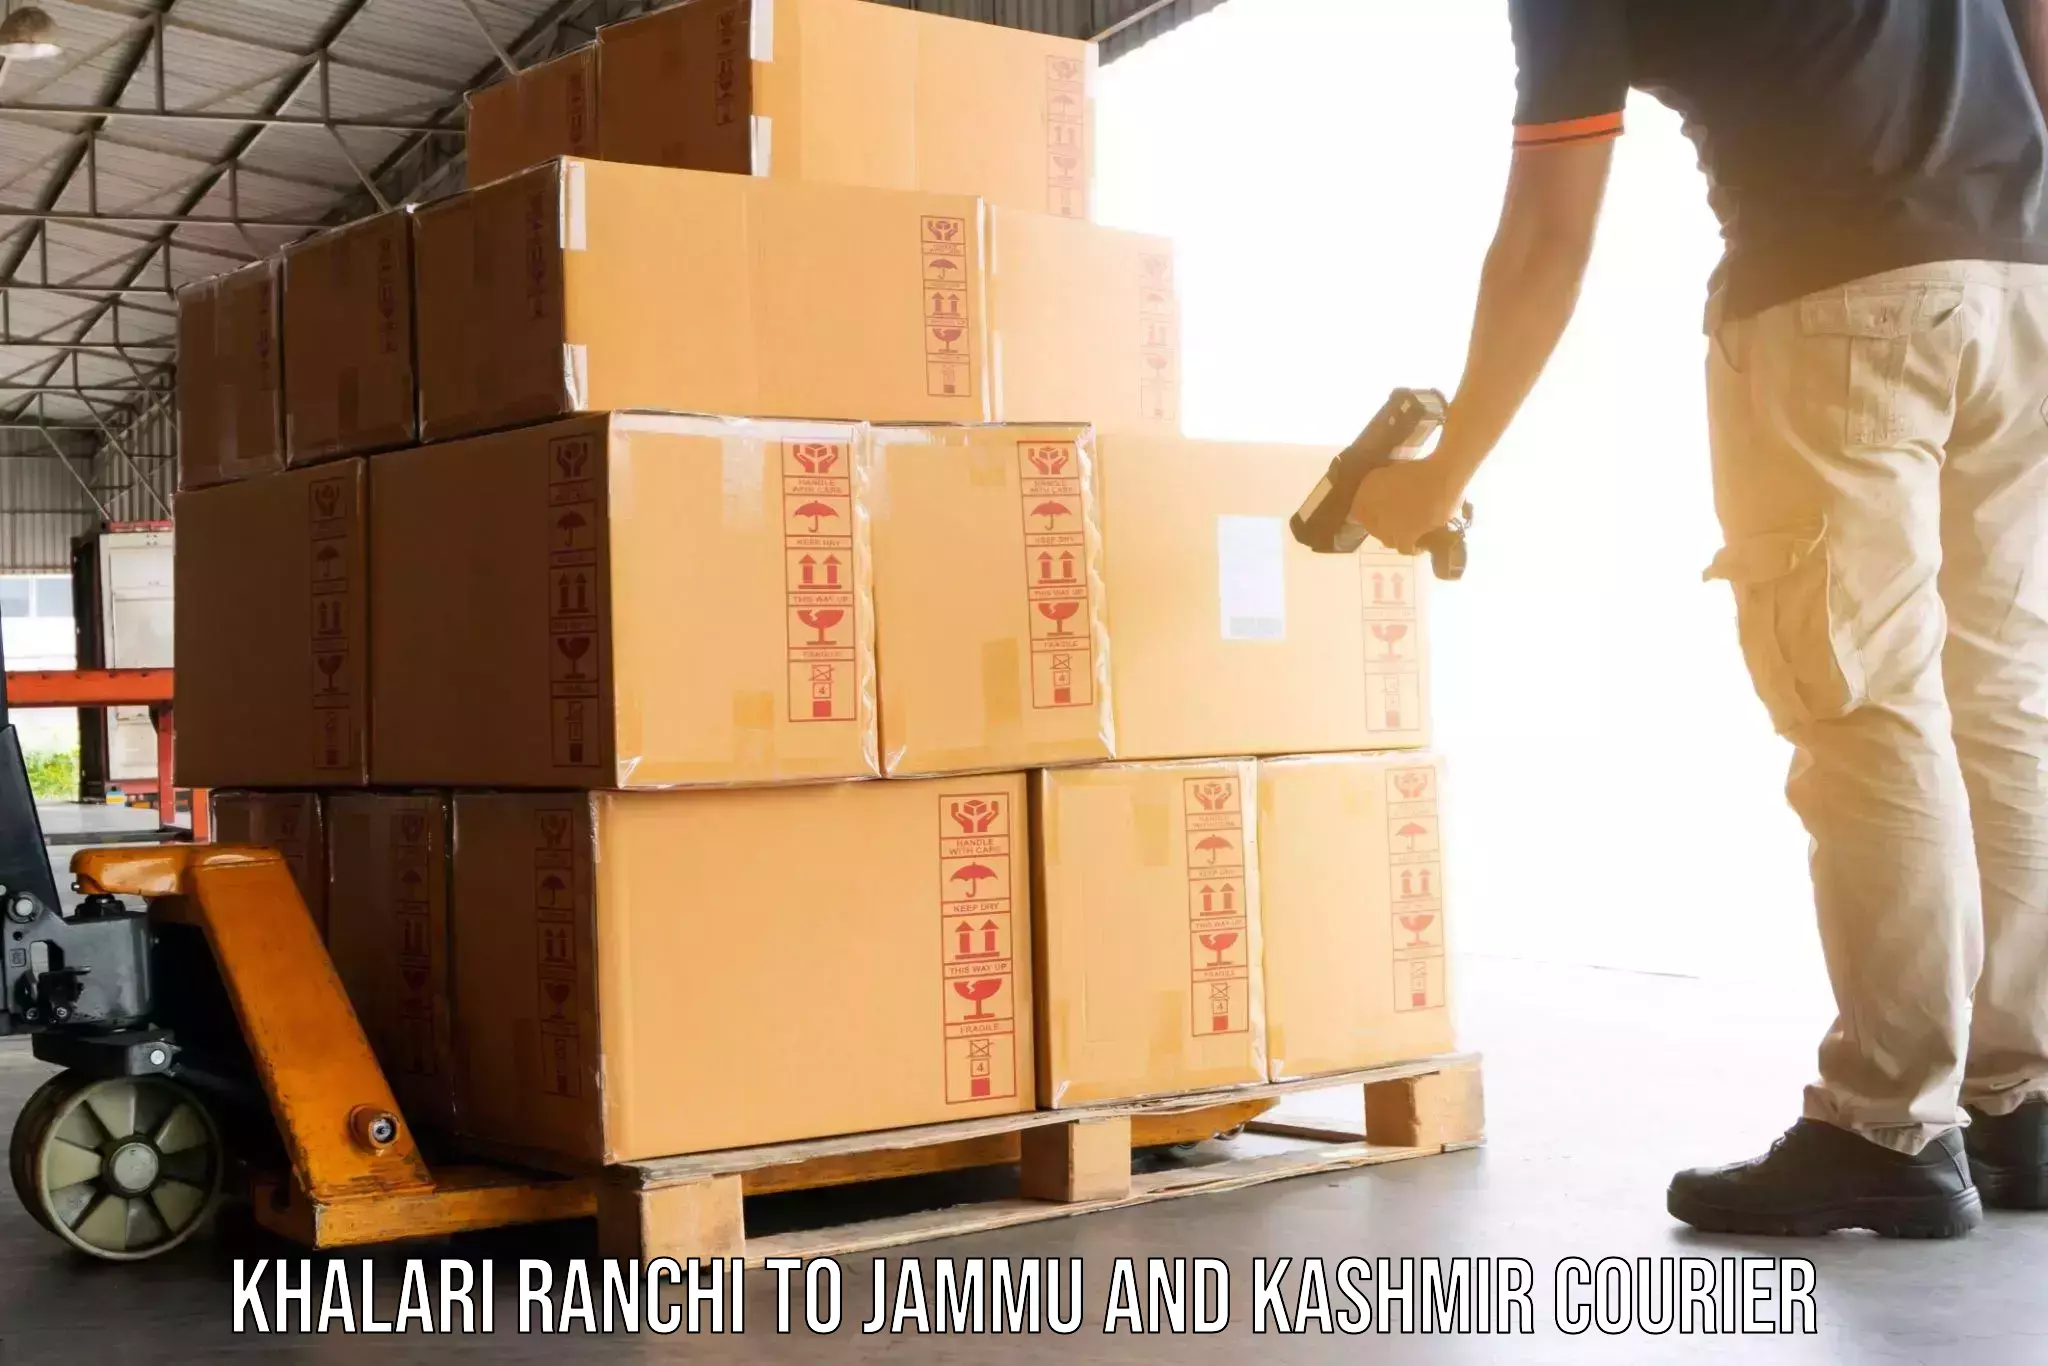 Professional packing services Khalari Ranchi to Sunderbani